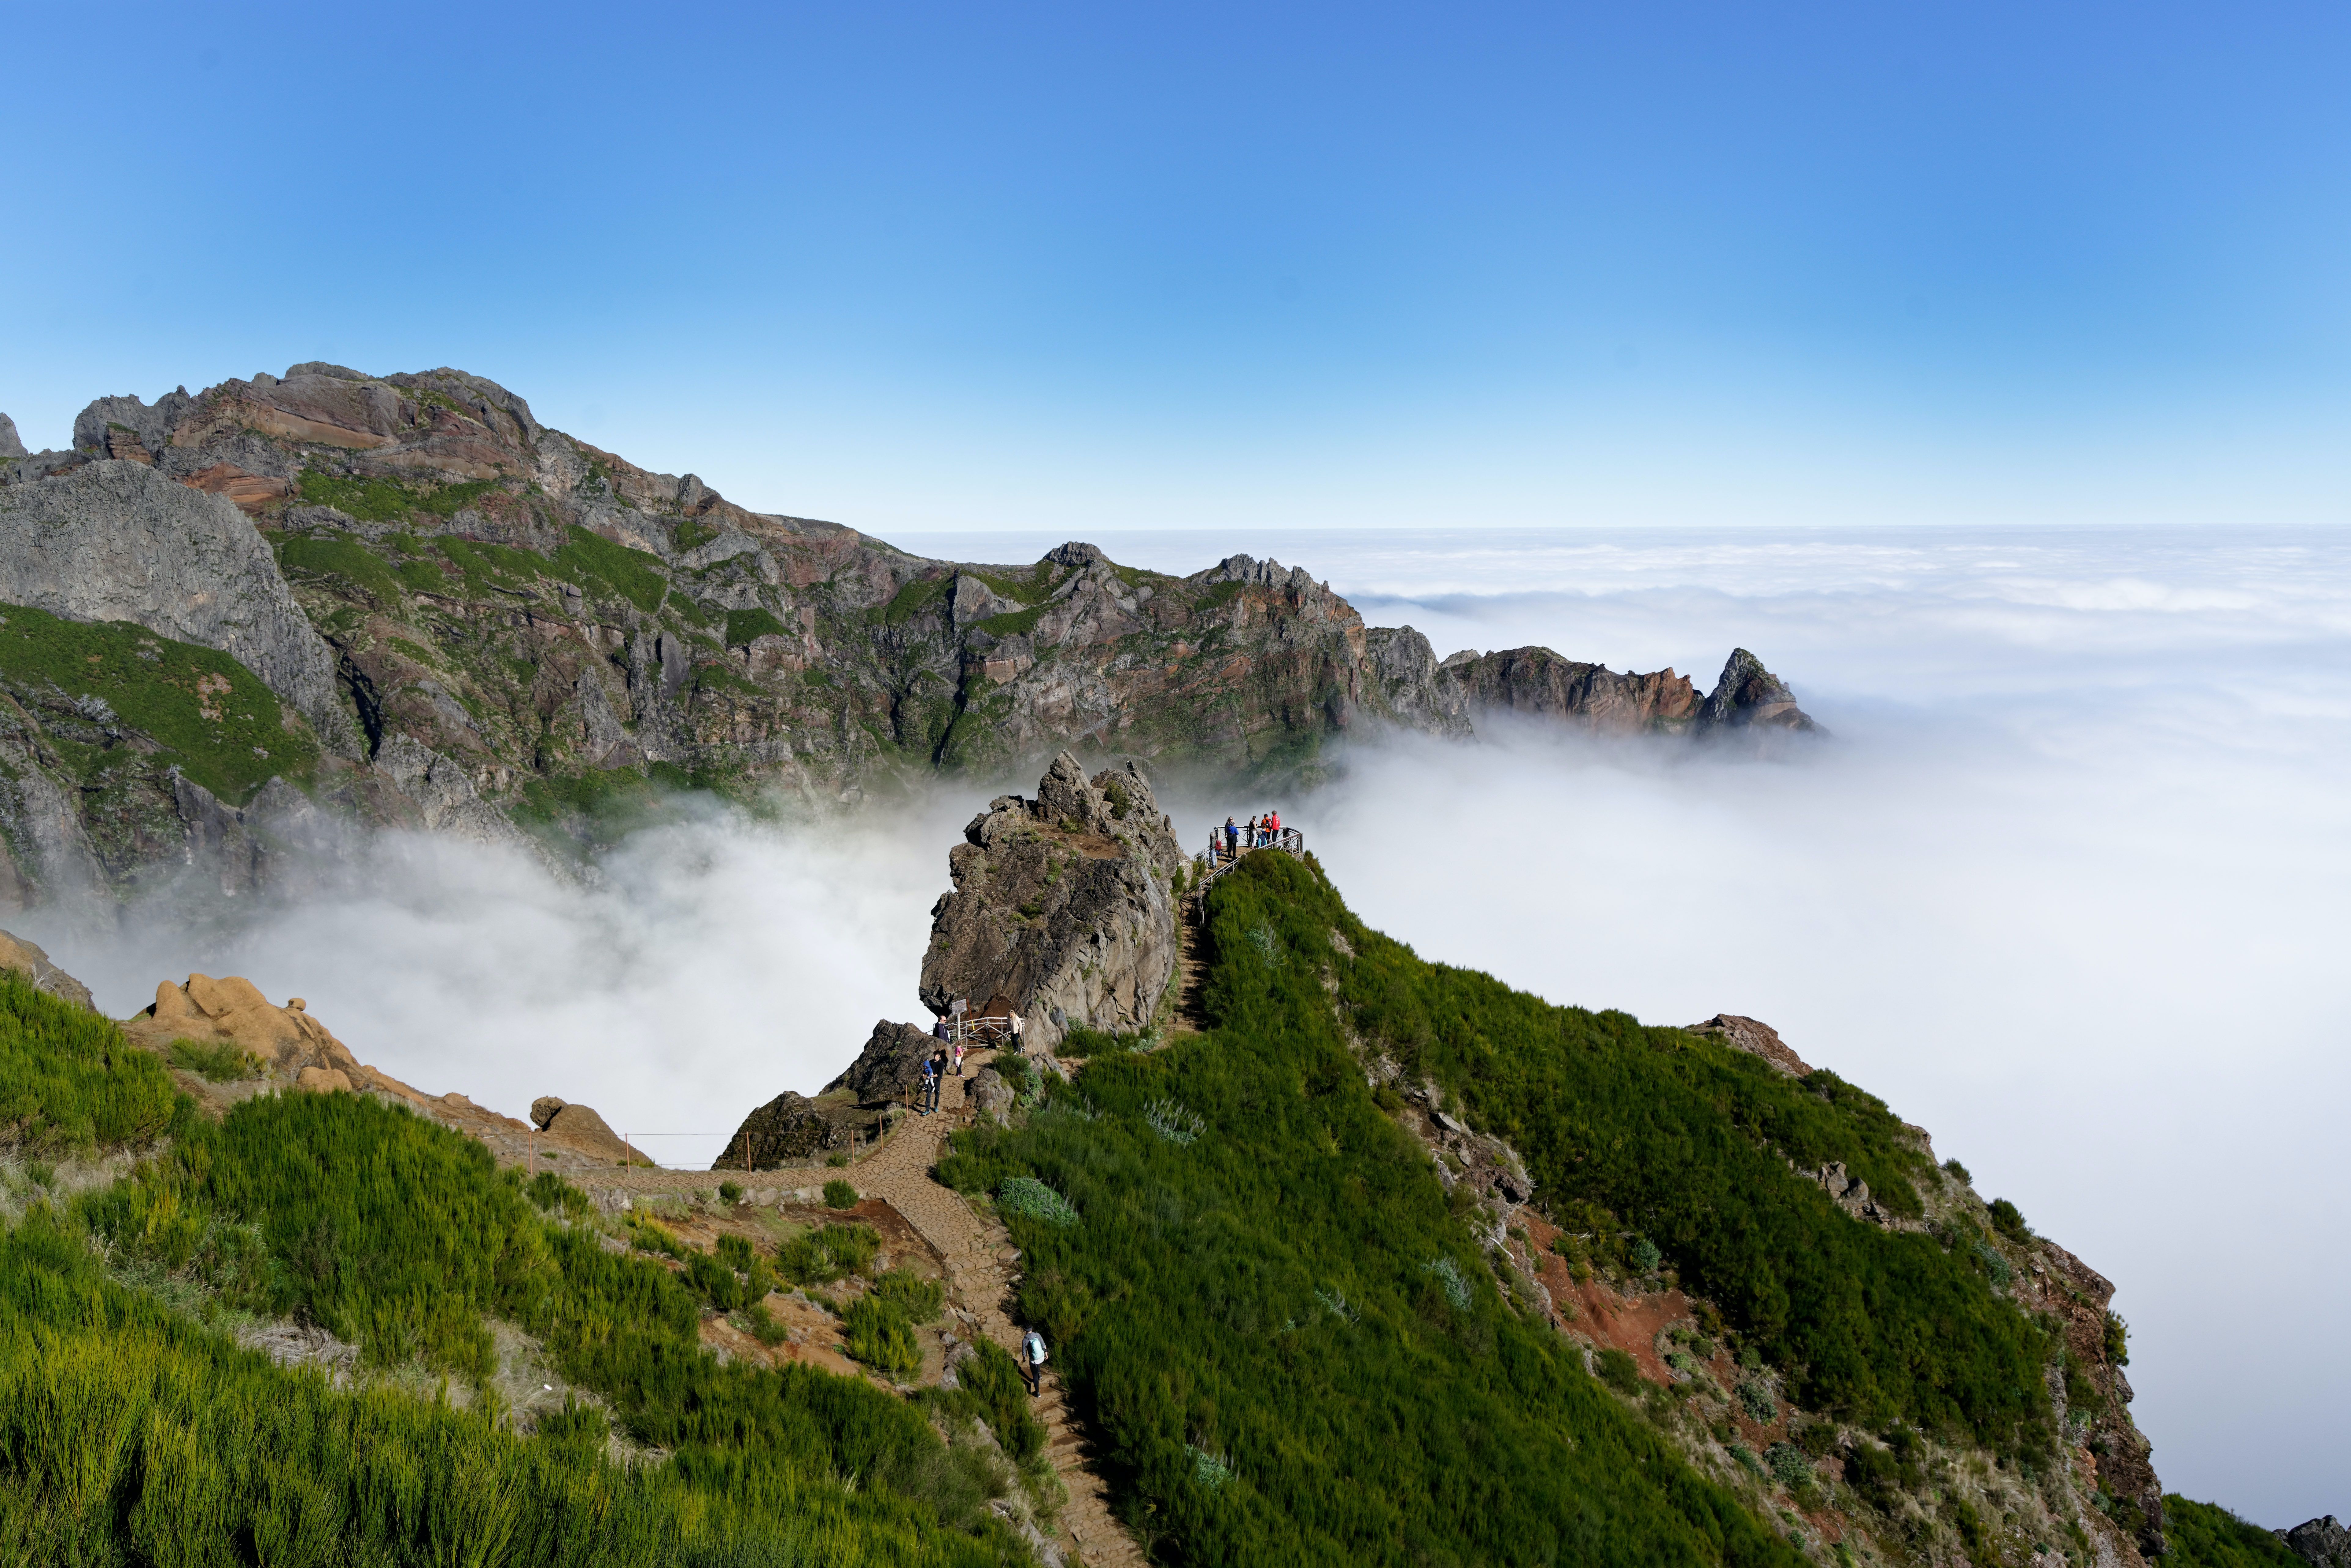 Summit of Pico do Areeiro, Madeira